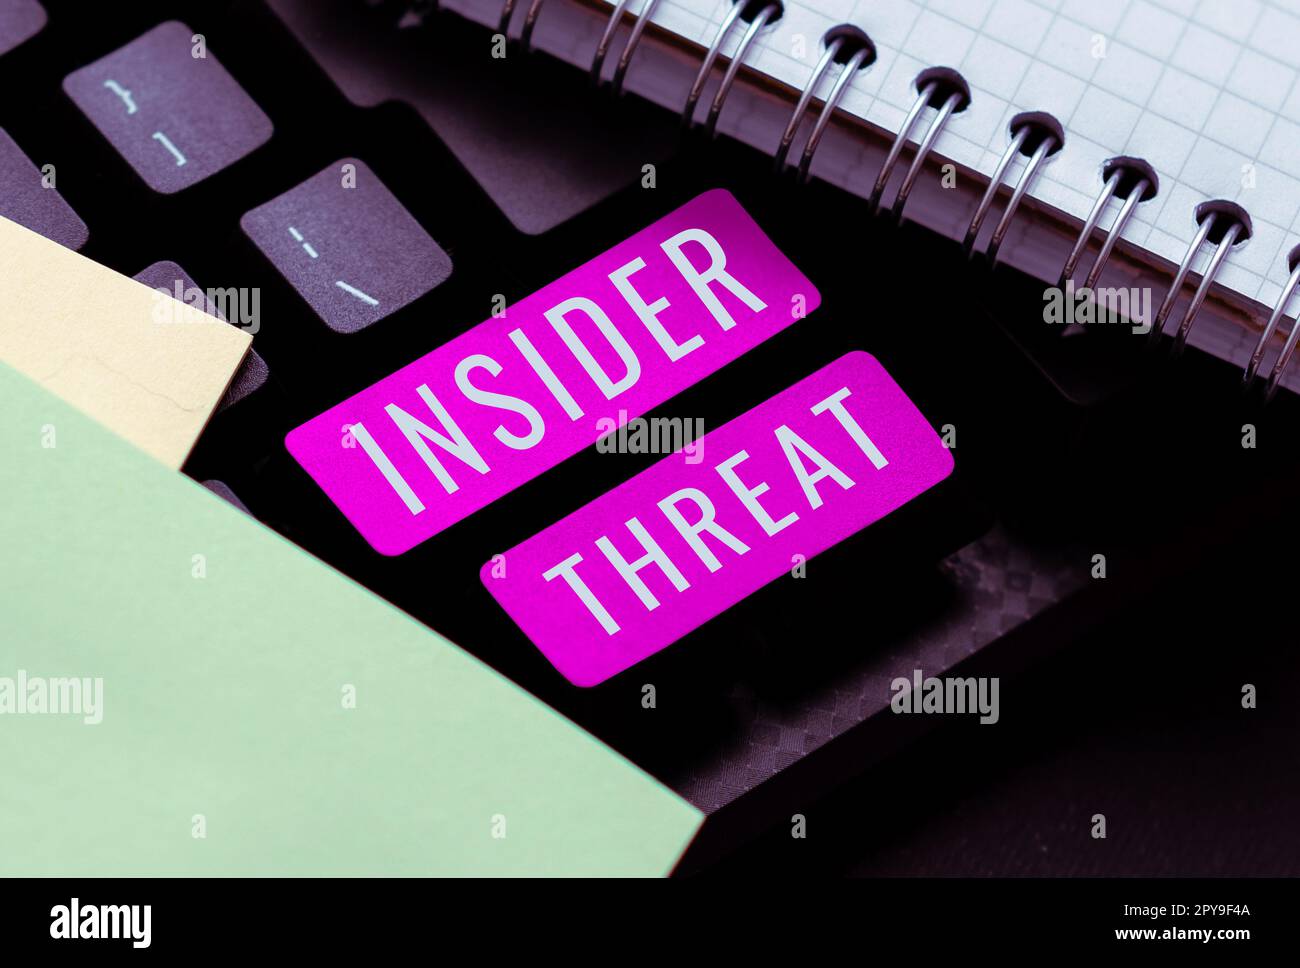 Textunterschrift stellt Insider-Bedrohung dar. Sicherheitsbedrohung durch das Internet-Konzept, die innerhalb des Unternehmens entsteht Stockfoto